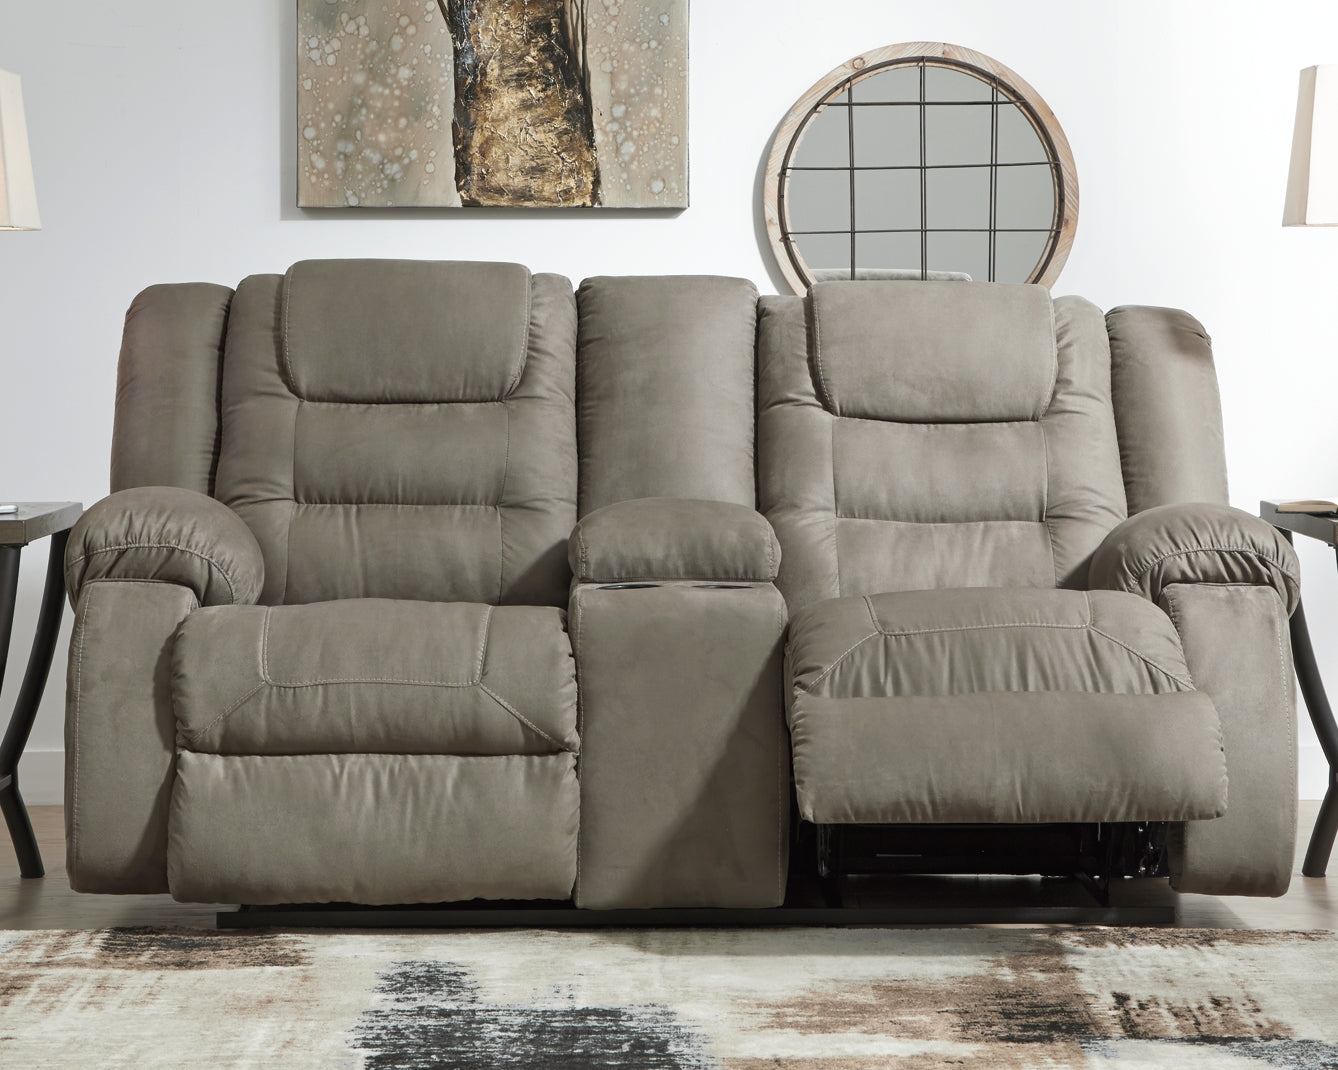 McCade DBL Rec Loveseat w/Console at Cloud 9 Mattress & Furniture furniture, home furnishing, home decor